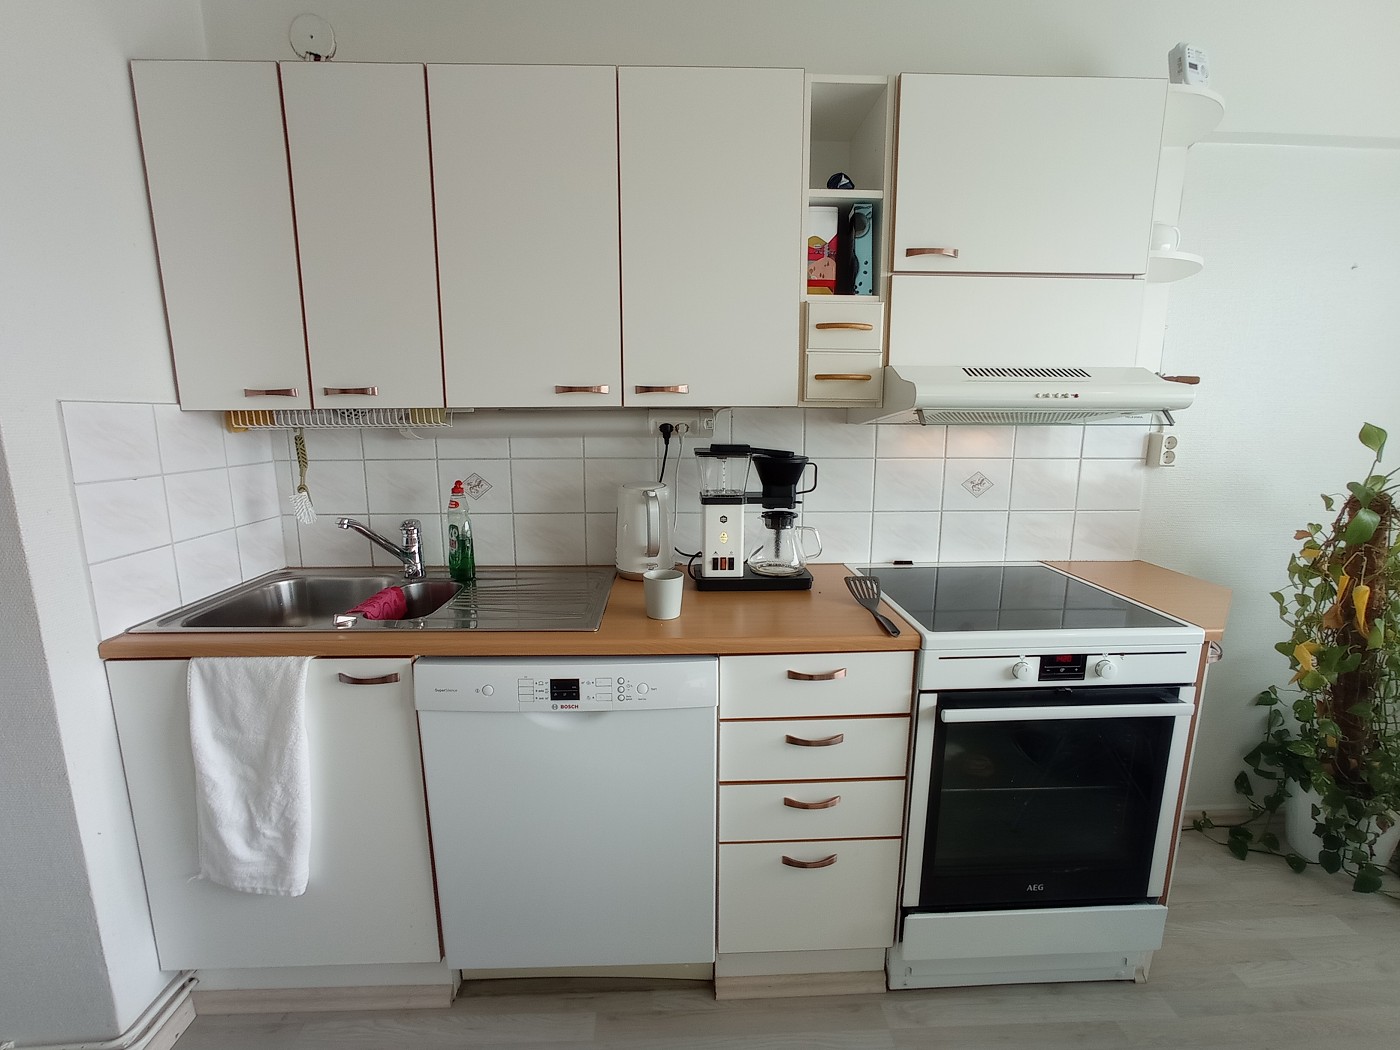 kitchen Airbnb Oulu Finland